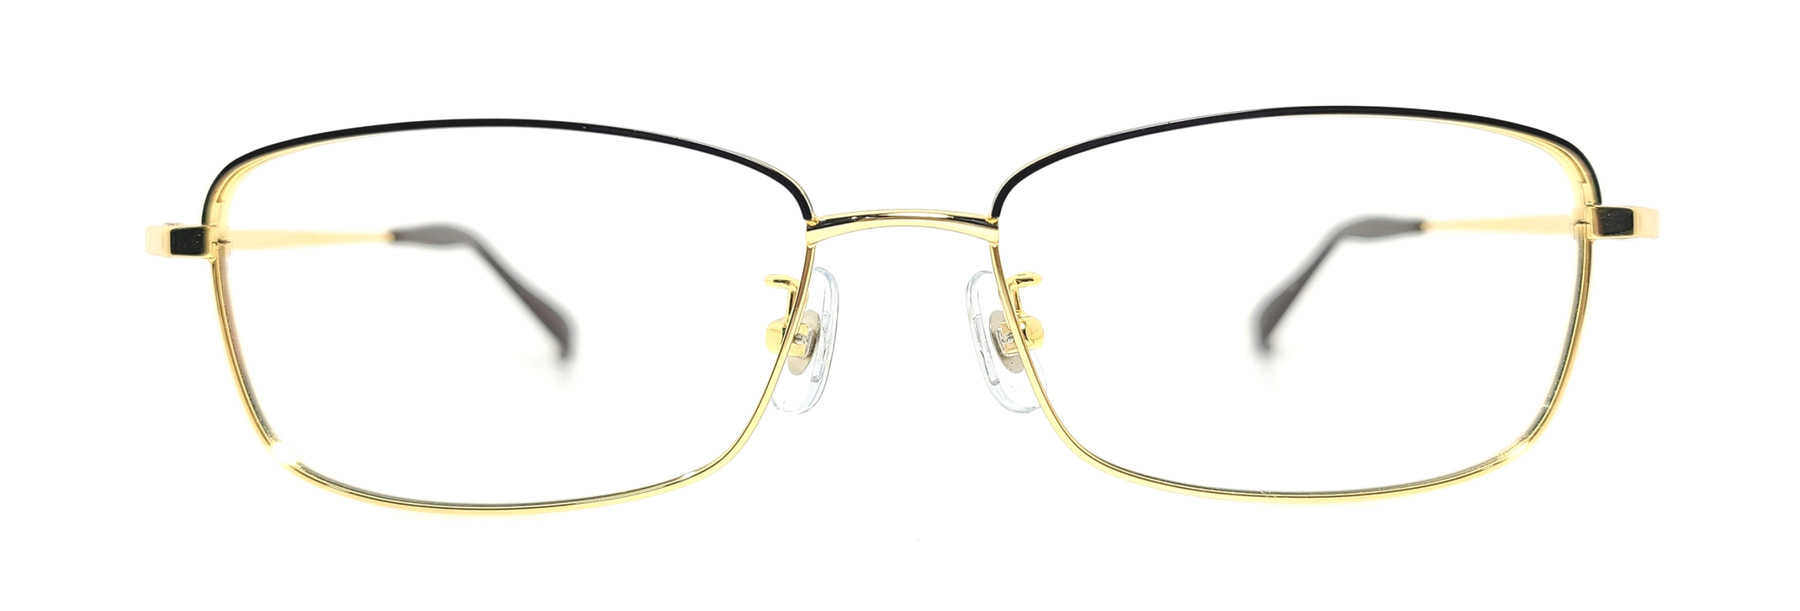 WITHUS-7408, Korean glasses, sunglasses, eyeglasses, glasses